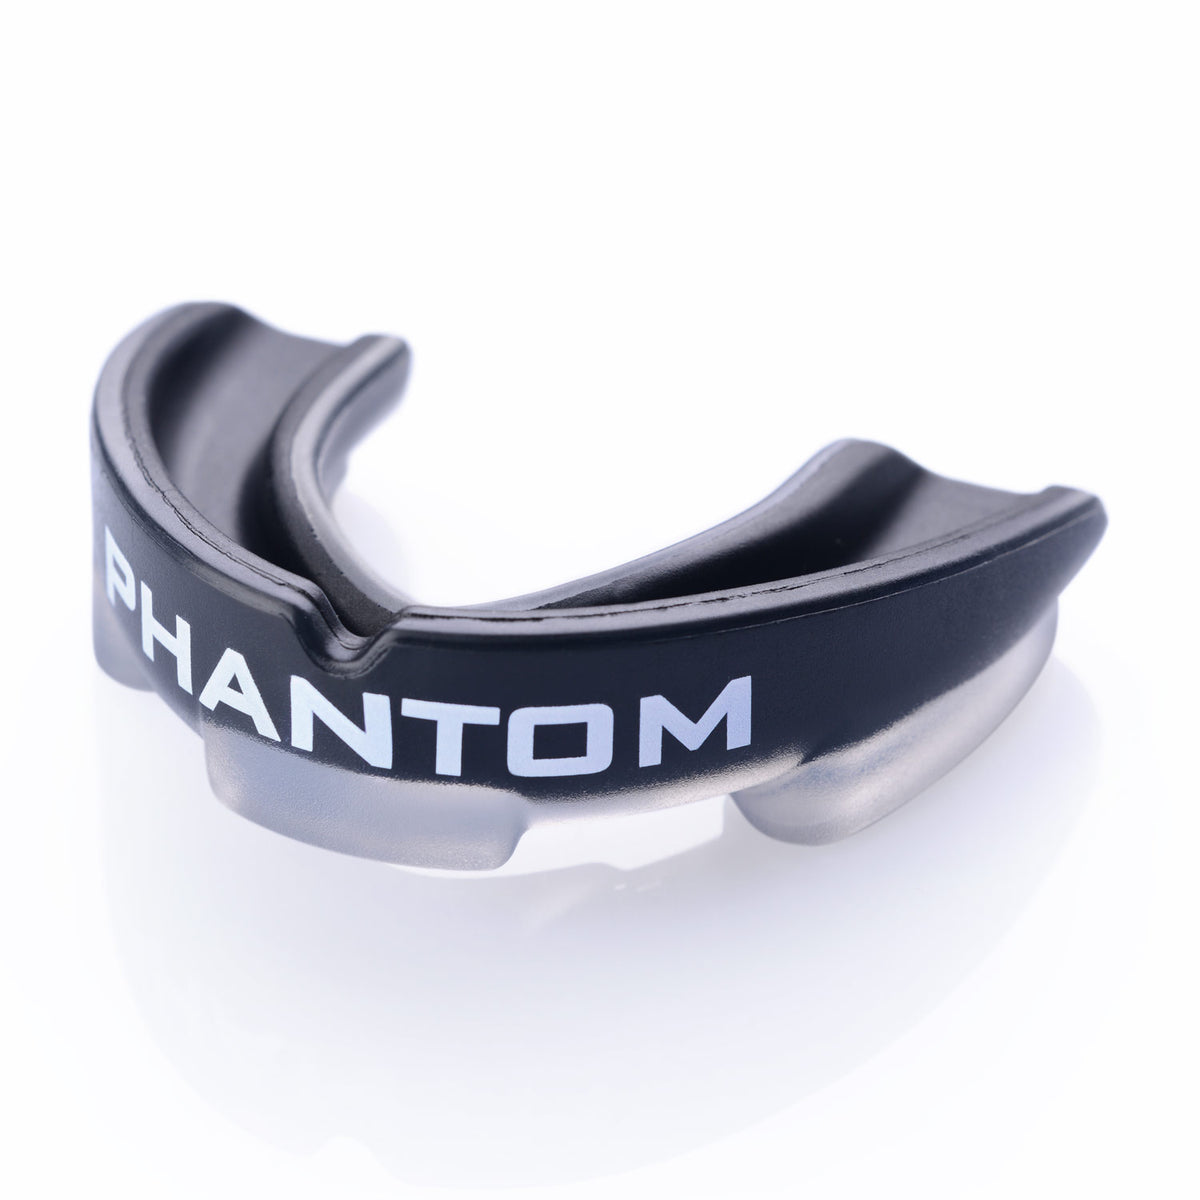 Phantom Impact štitnik za usta u crnoj boji za borilačke vještine